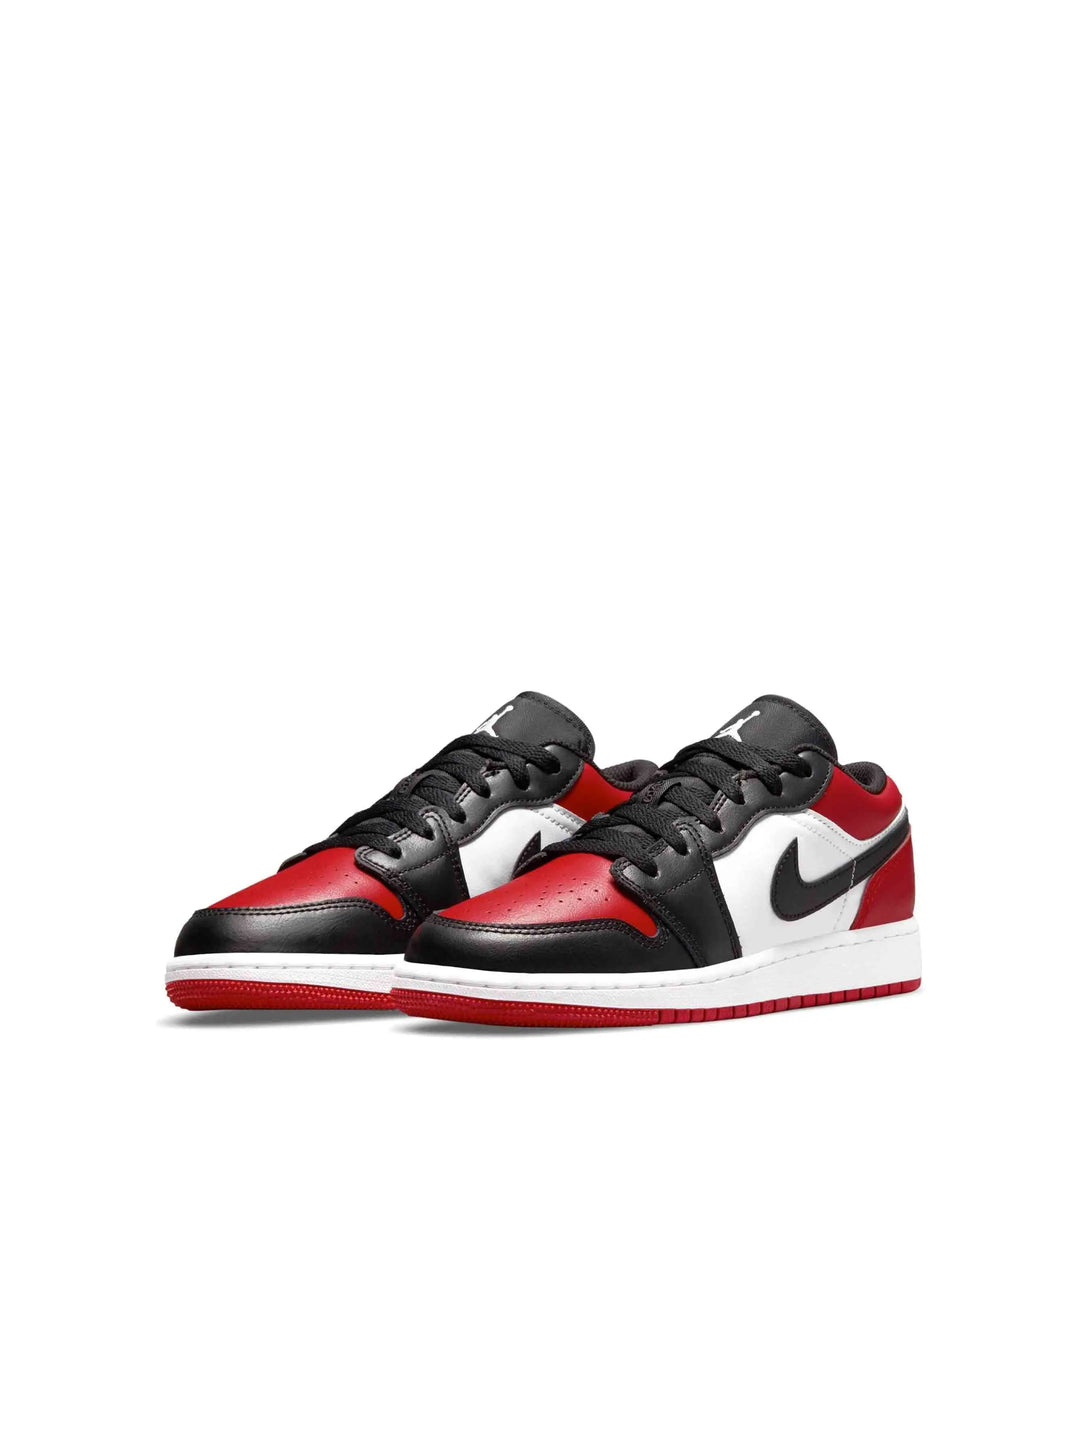 Nike Air Jordan 1 Low Bred Toe (GS) - Prior